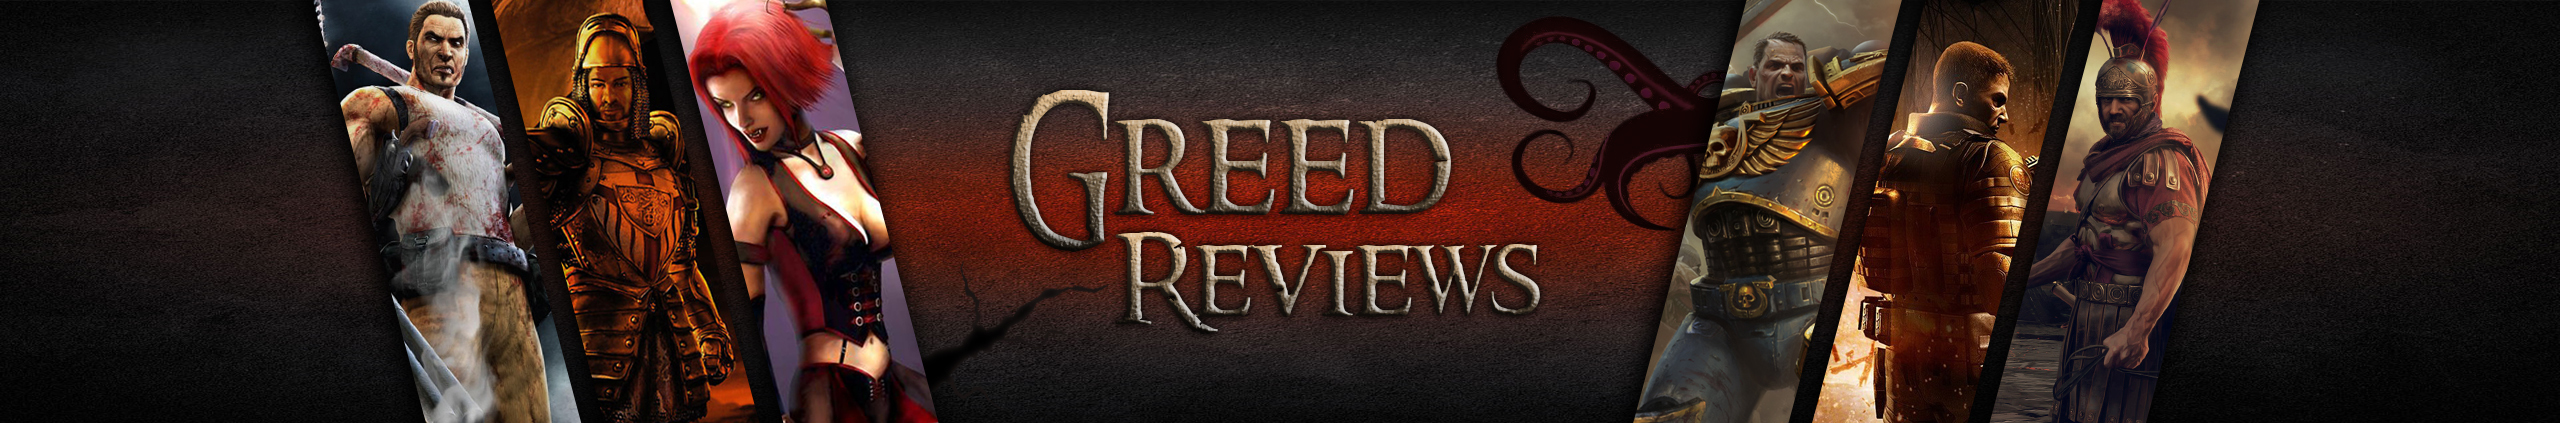 обложка автора Greed Reviews